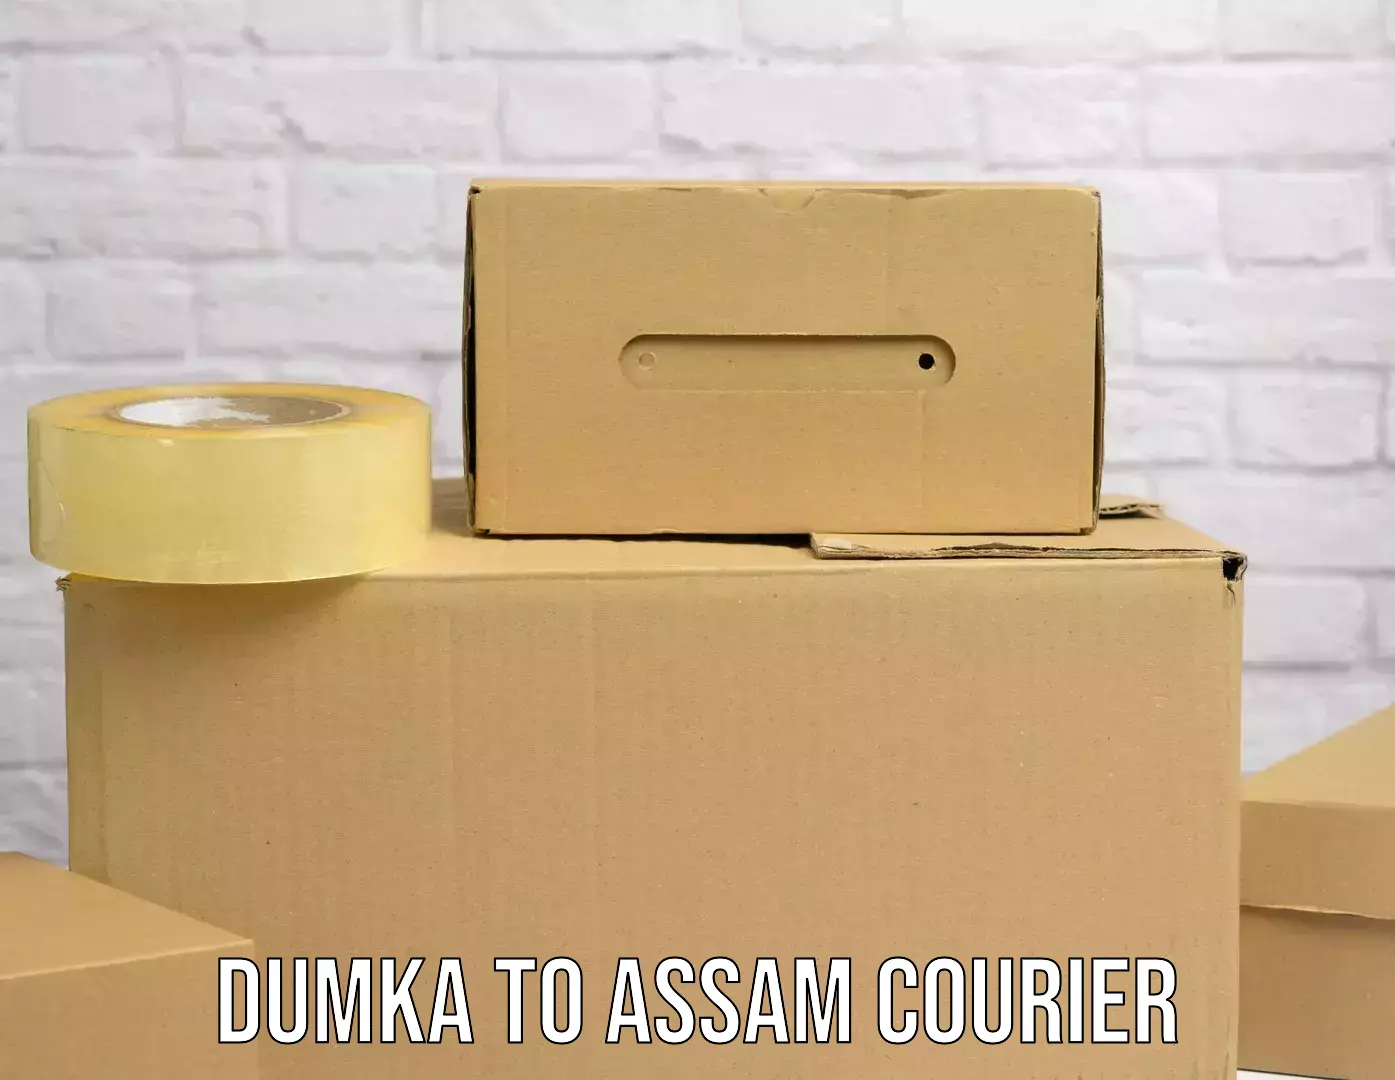 Modern courier technology Dumka to Assam